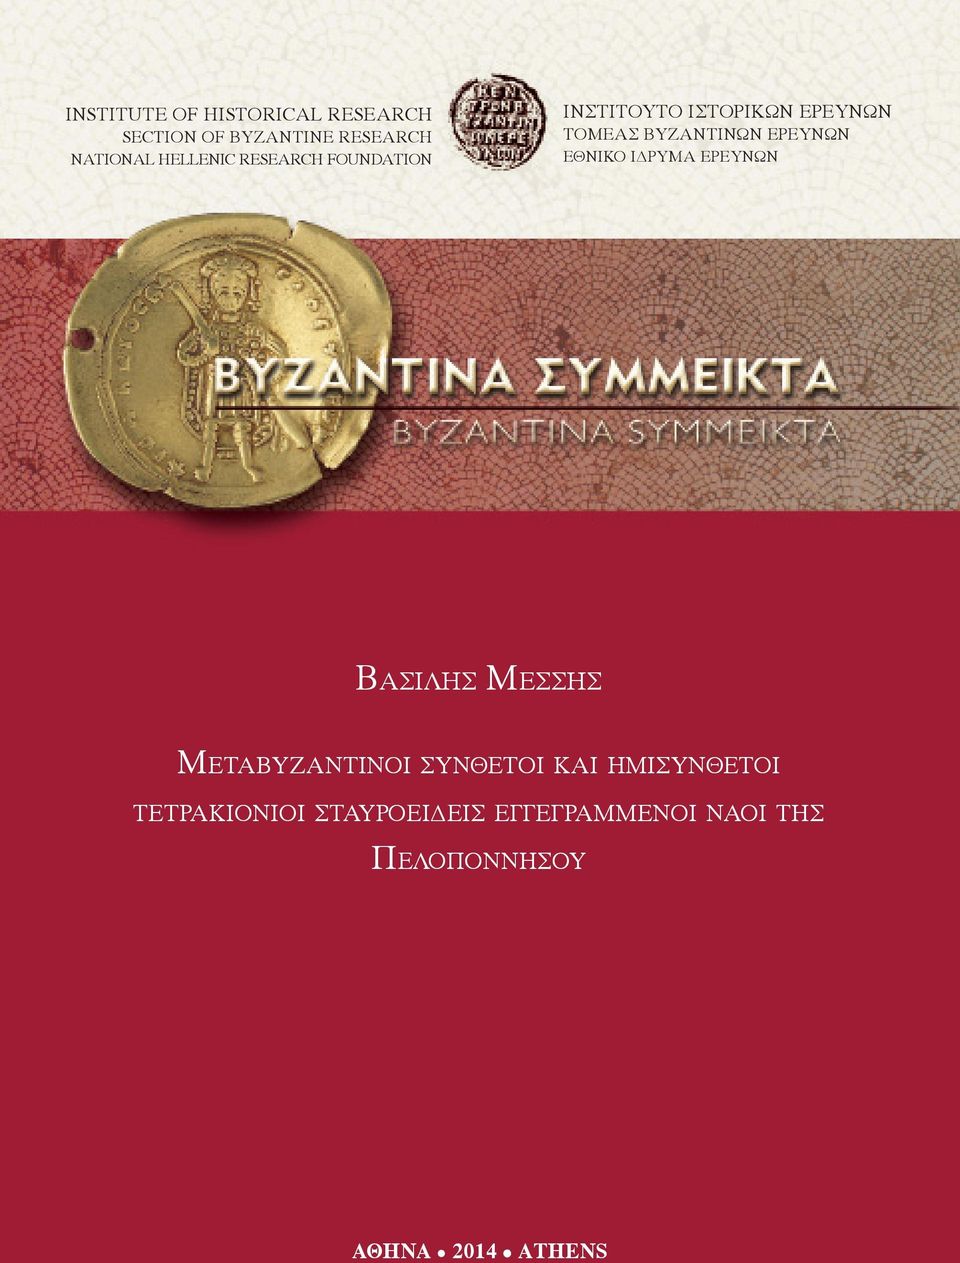 Μεταβυζαντινοί of the σύνθετοι Provincial και ημισύνθετοι Administration of the Byzantine Empire (ca 600-1200):